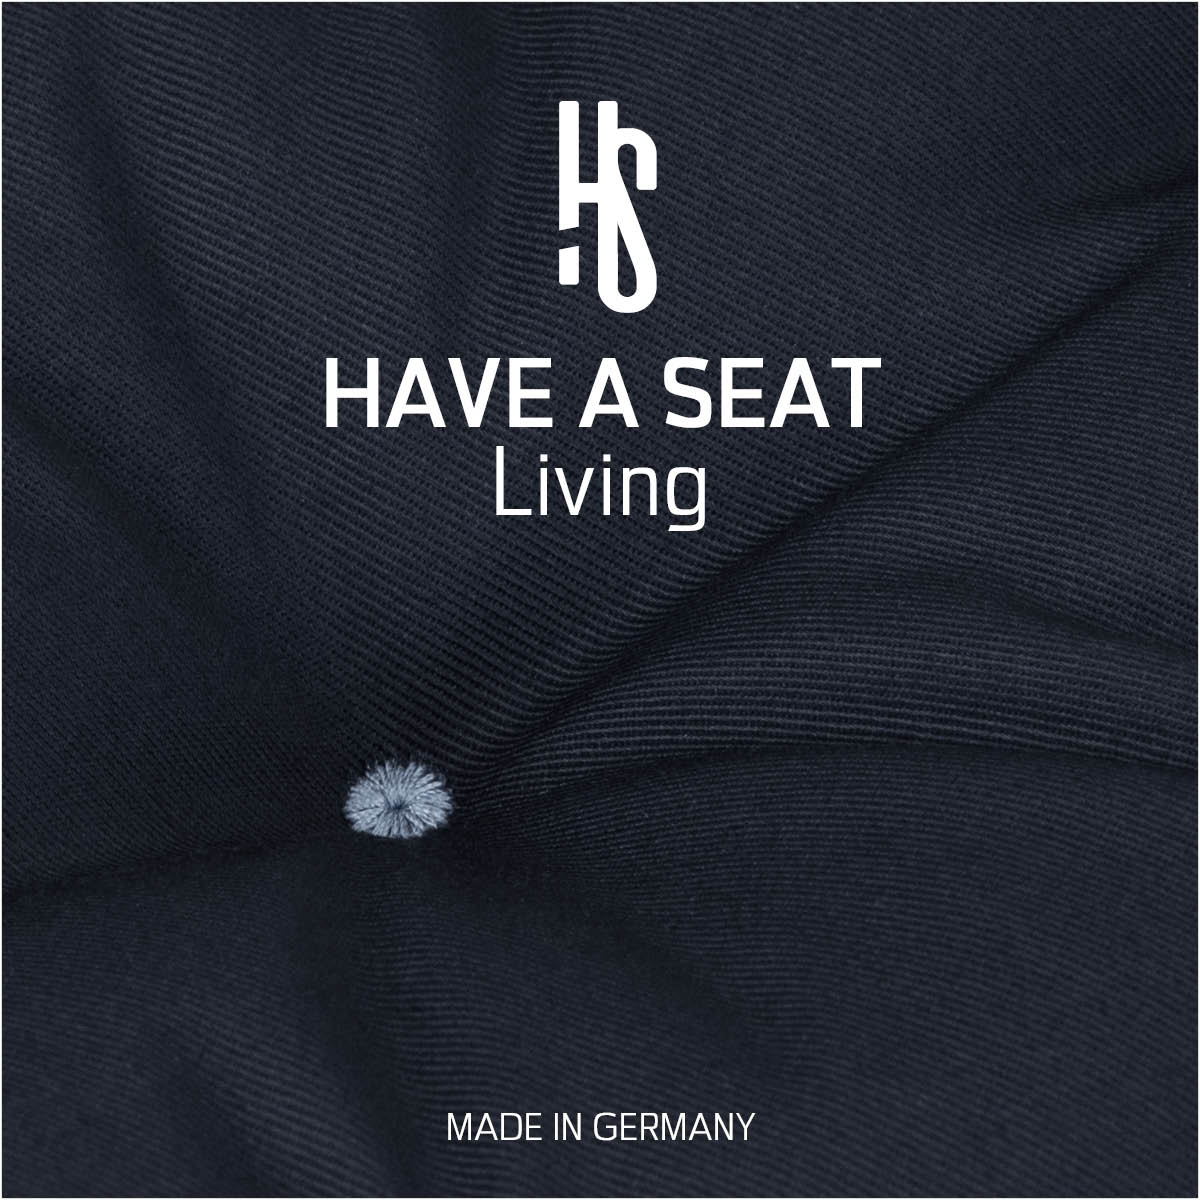 Sitzpolster Auflage dunkelblau für Sitzbank aus hautfreundlichem, strapazierfähigem Baumwollmischgewebe | HAVE A SEAT Living - Made in Germany